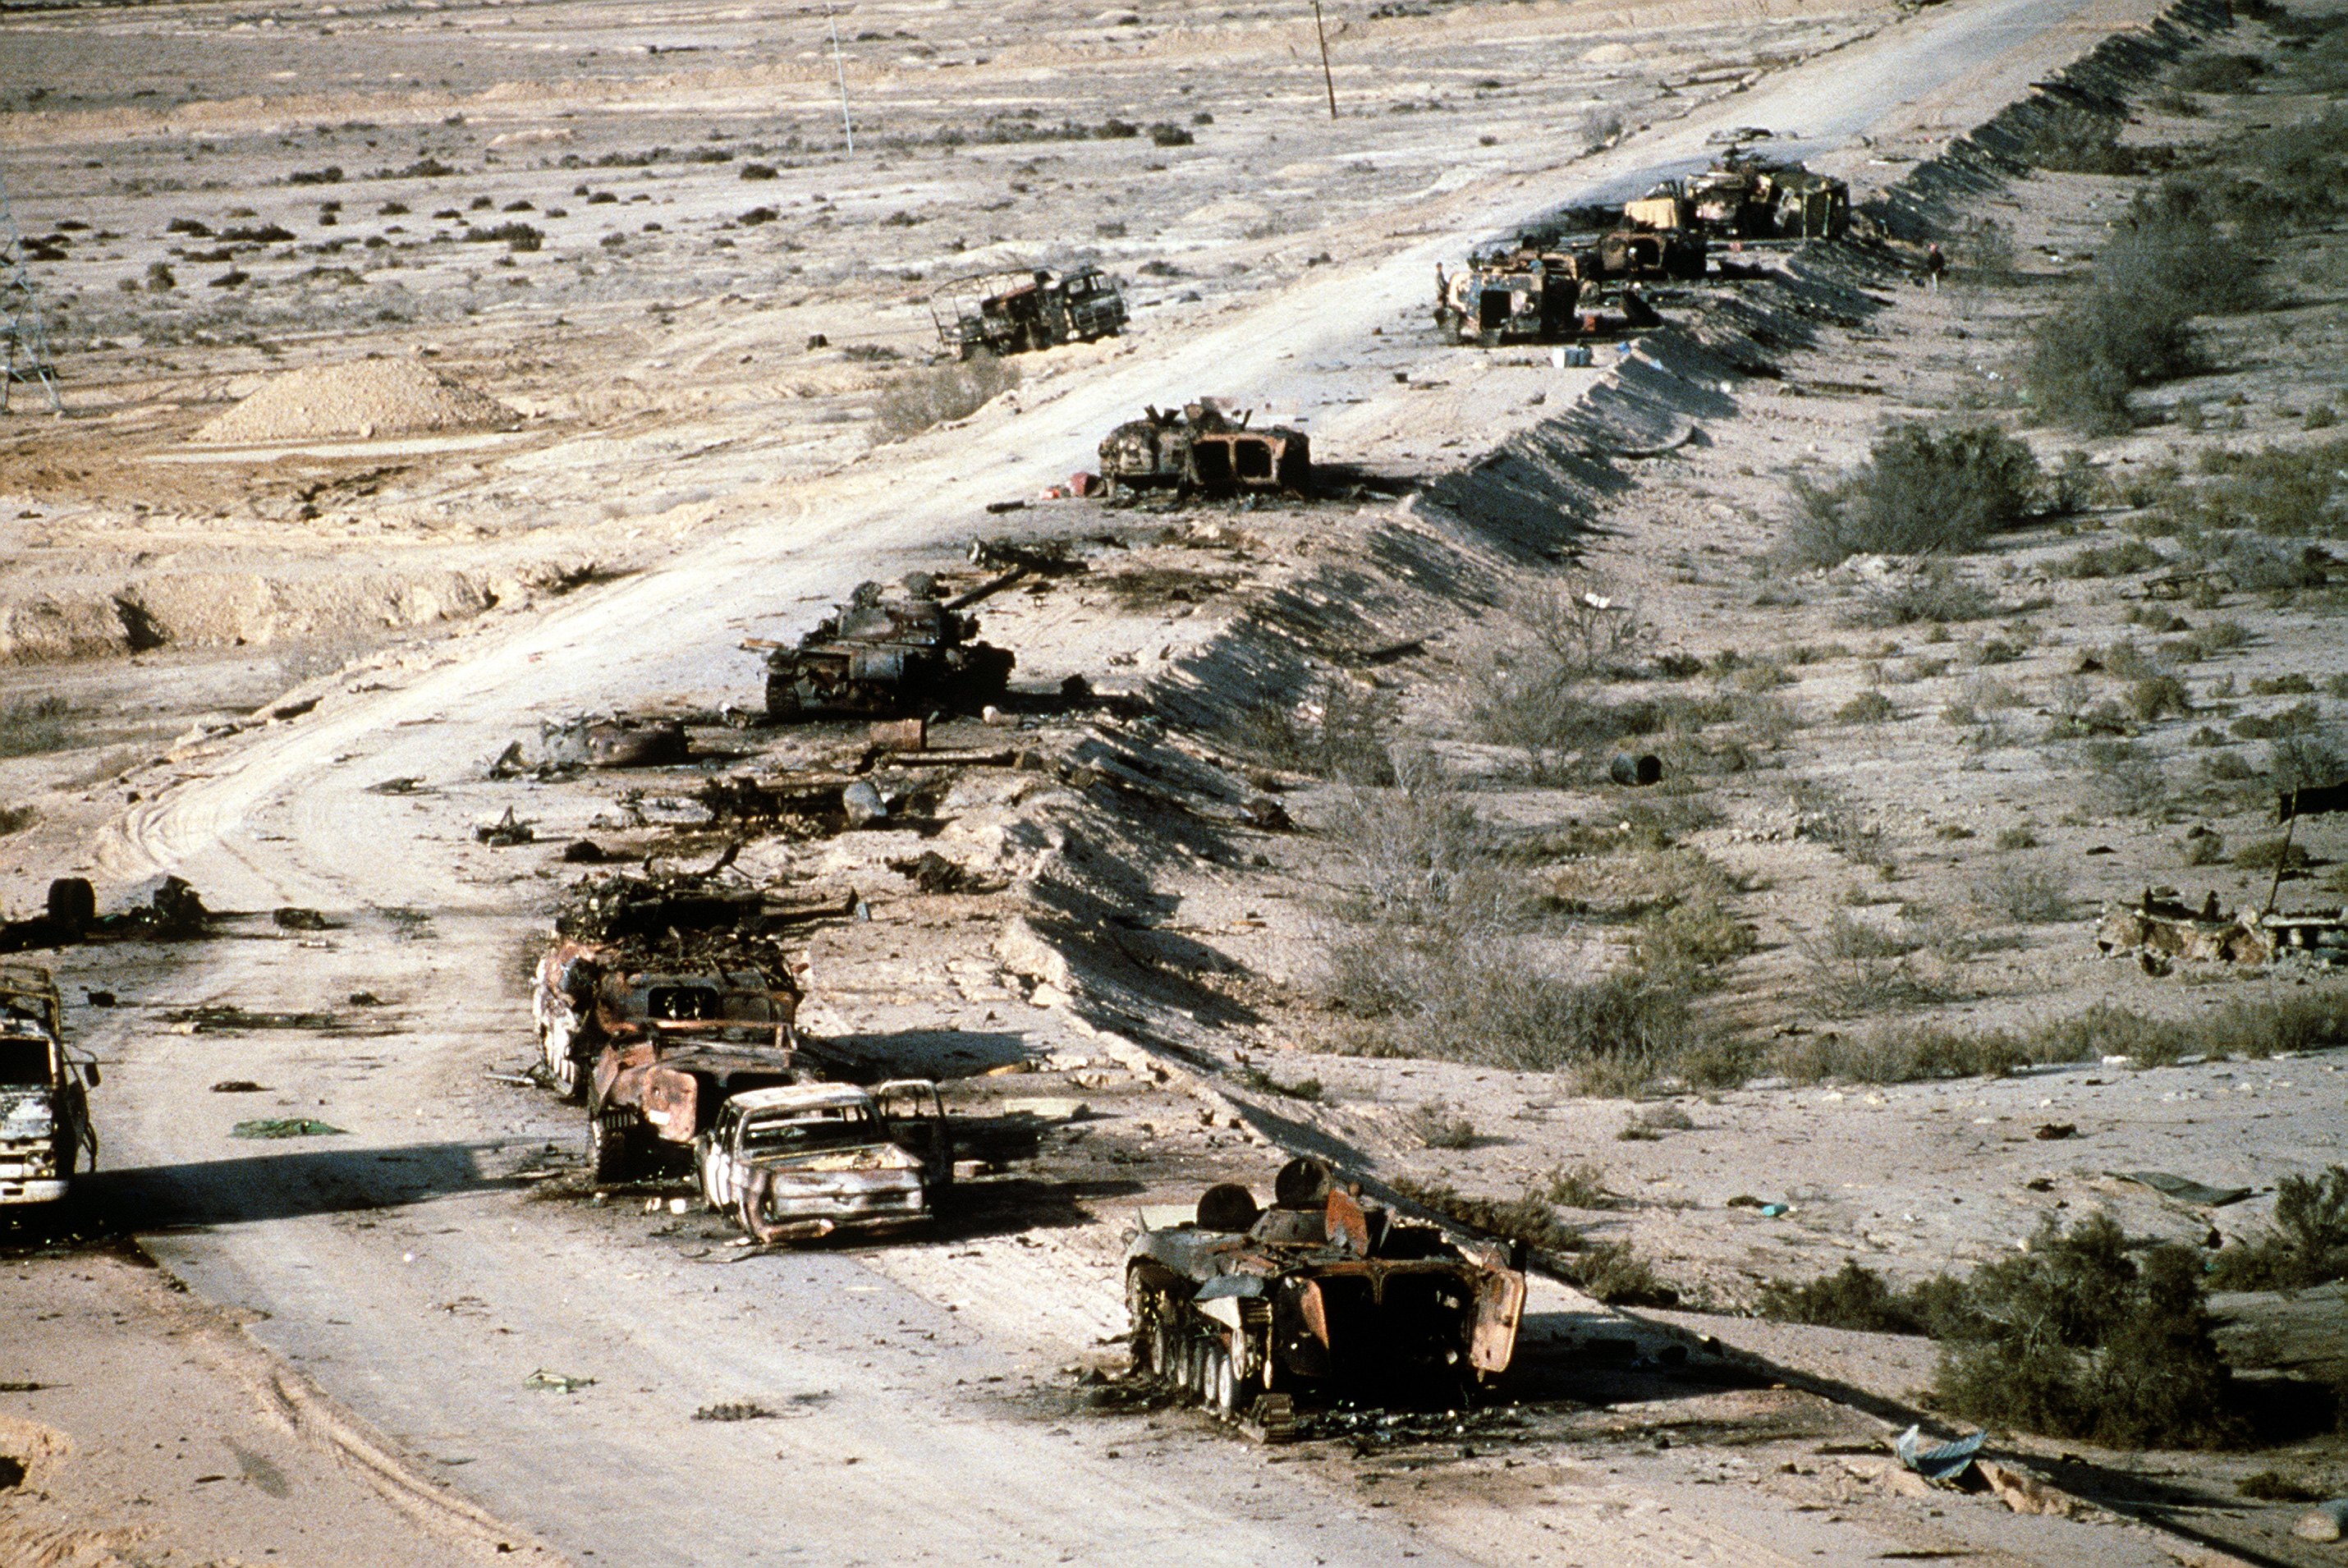 IrakDesertStorm1991.jpg